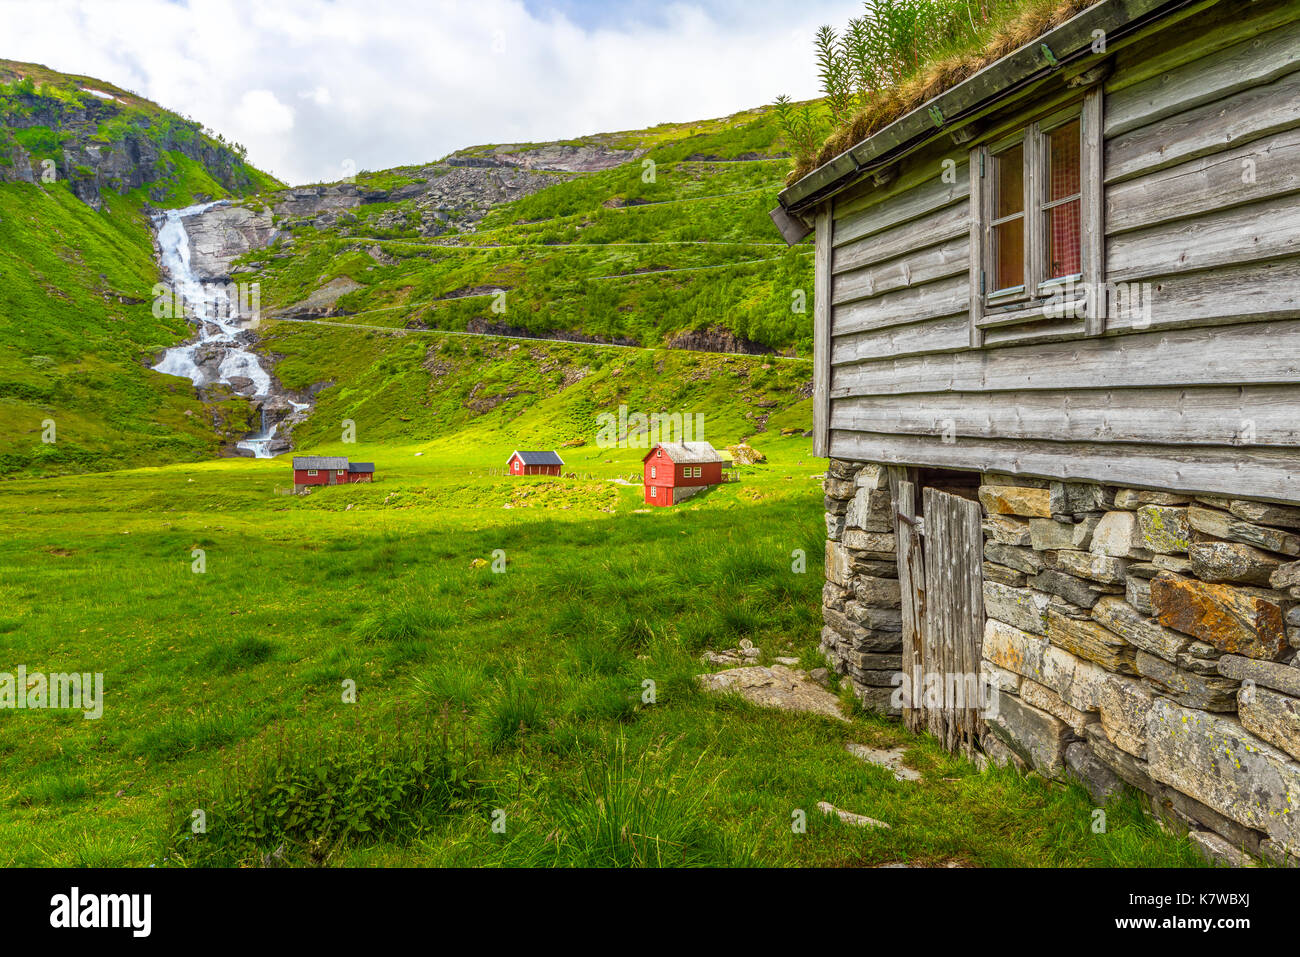 Chute d'Sendefossen, cabanes de bois rouge et le Serpentinveg Vikafjell près de Myrkdalen, région, Norvège, Scandinavie Banque D'Images